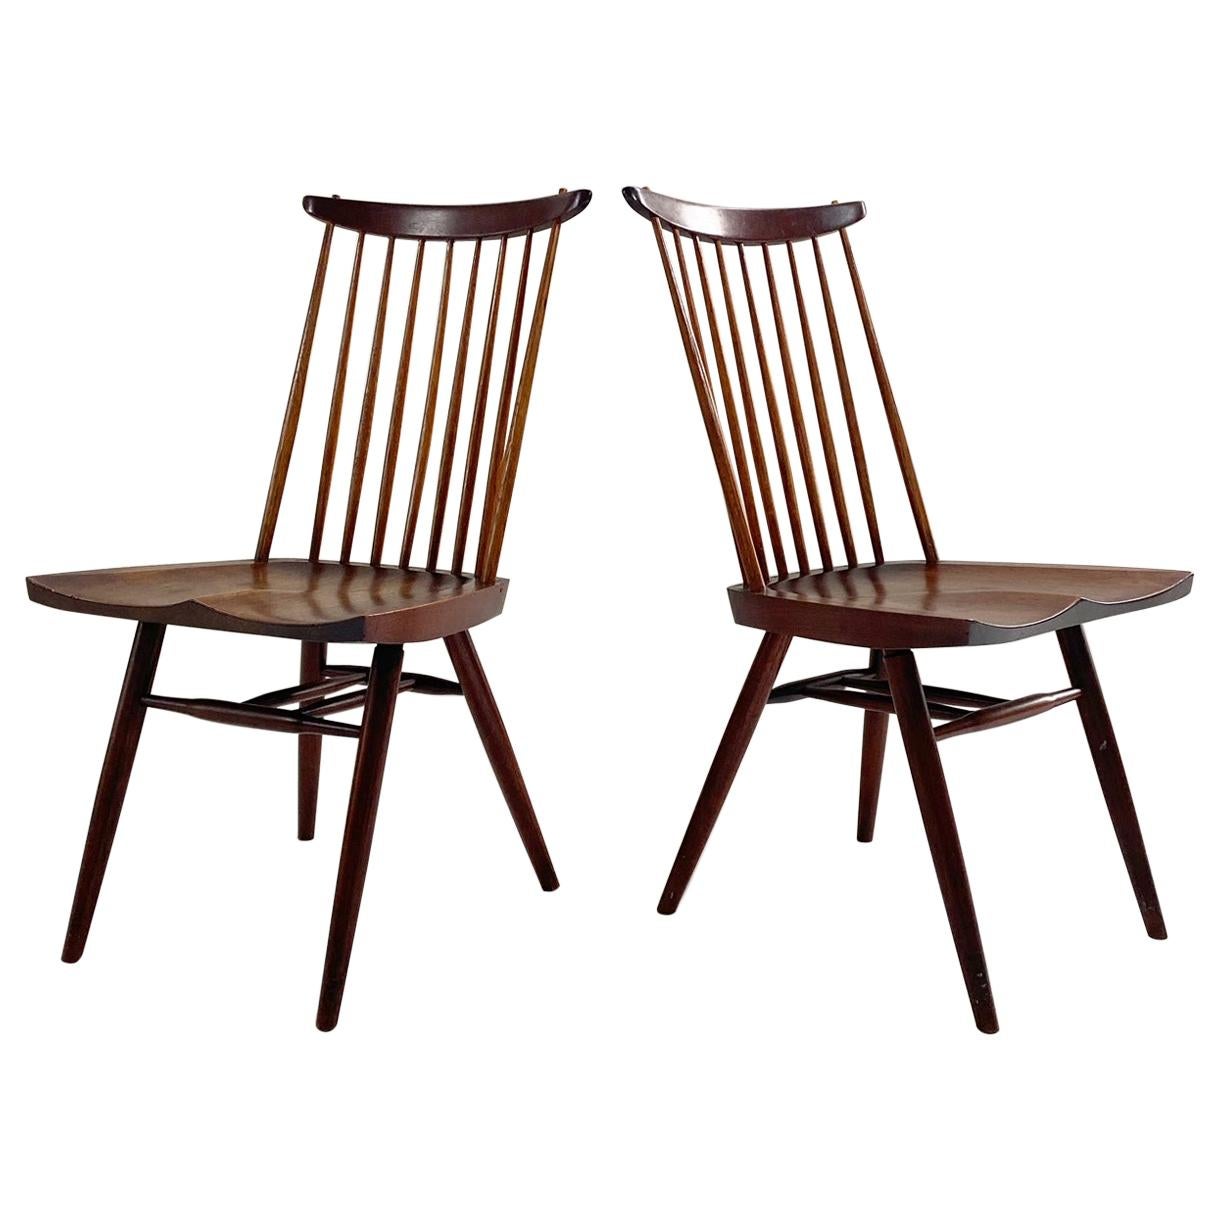 George Nakashima New Chairs, Pair